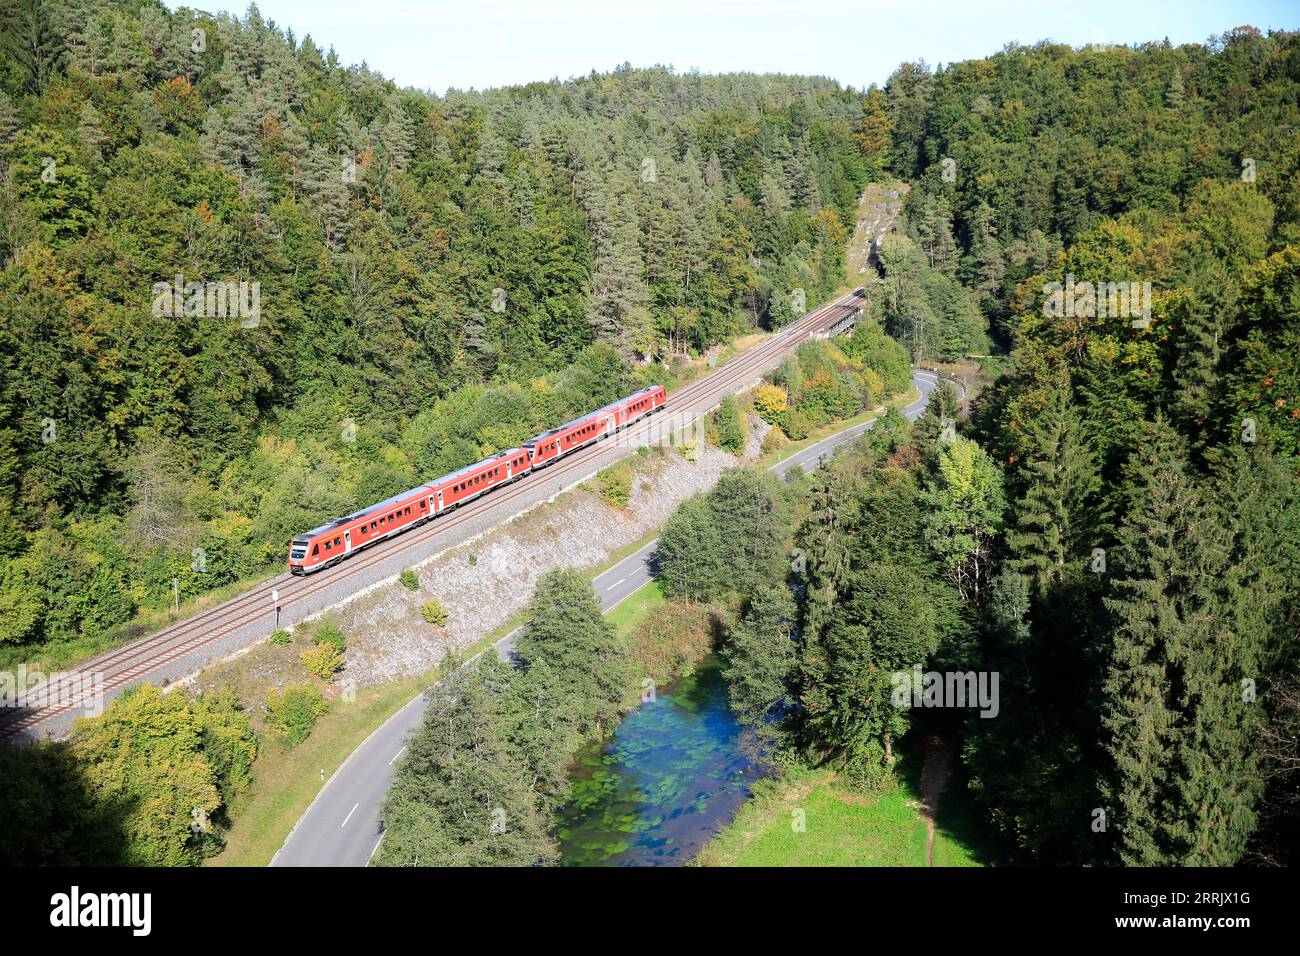 DB Regio Railway, le linee da Norimberga a Hof, Furth im Wald, Marktredwitz e Schwandorf furono le prime linee ad essere aggiornate per l'uso dei treni Pendolino nei primi anni '1990, Baviera, Germania Foto Stock